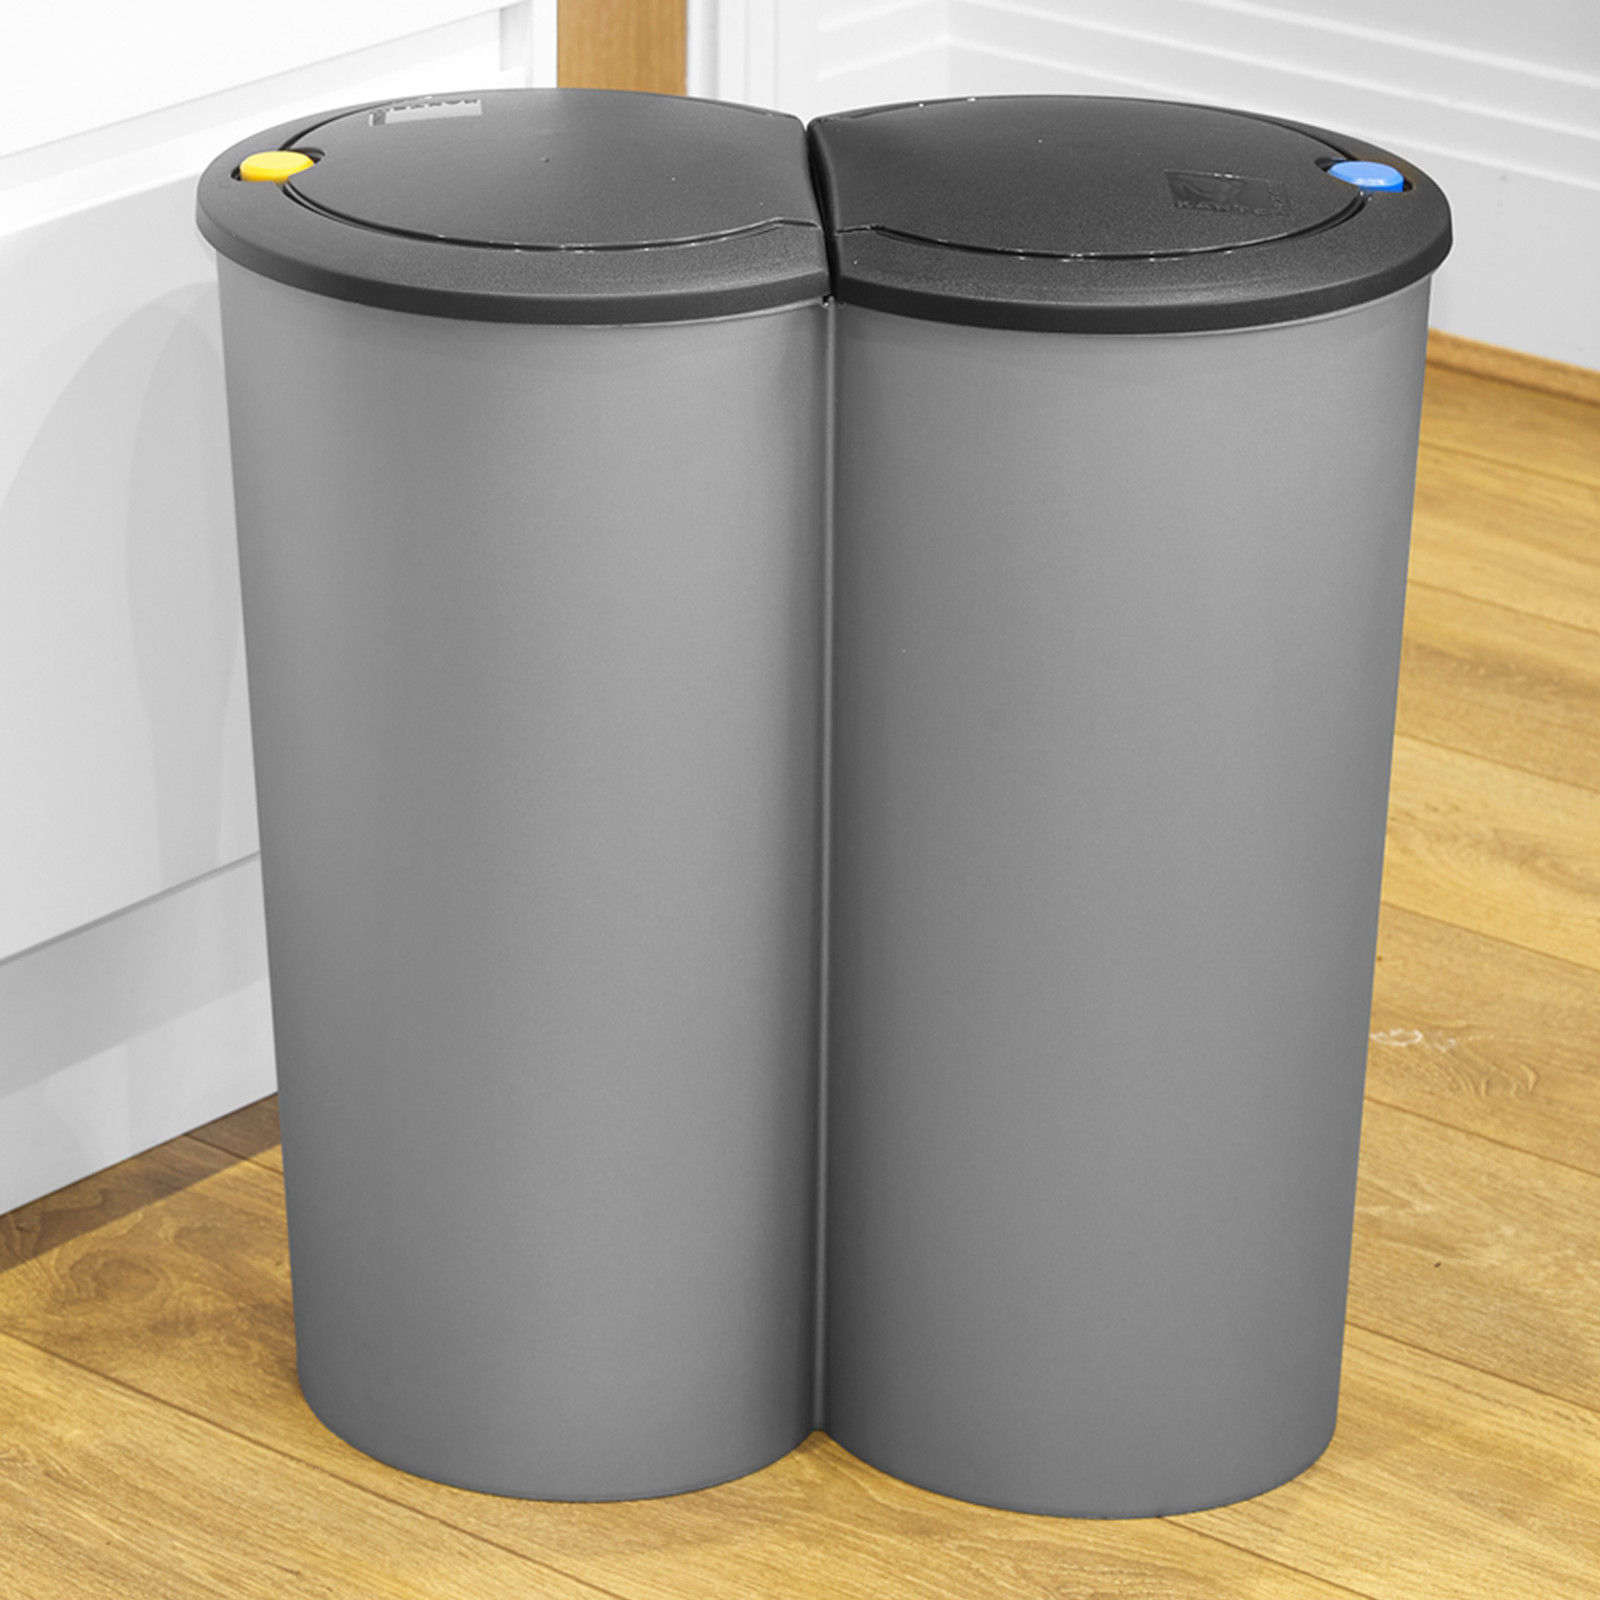 Doppel Recycling Abfall Duo Mülleimer Plastik Müll Verfügung Karton 2 X 25 Liter 